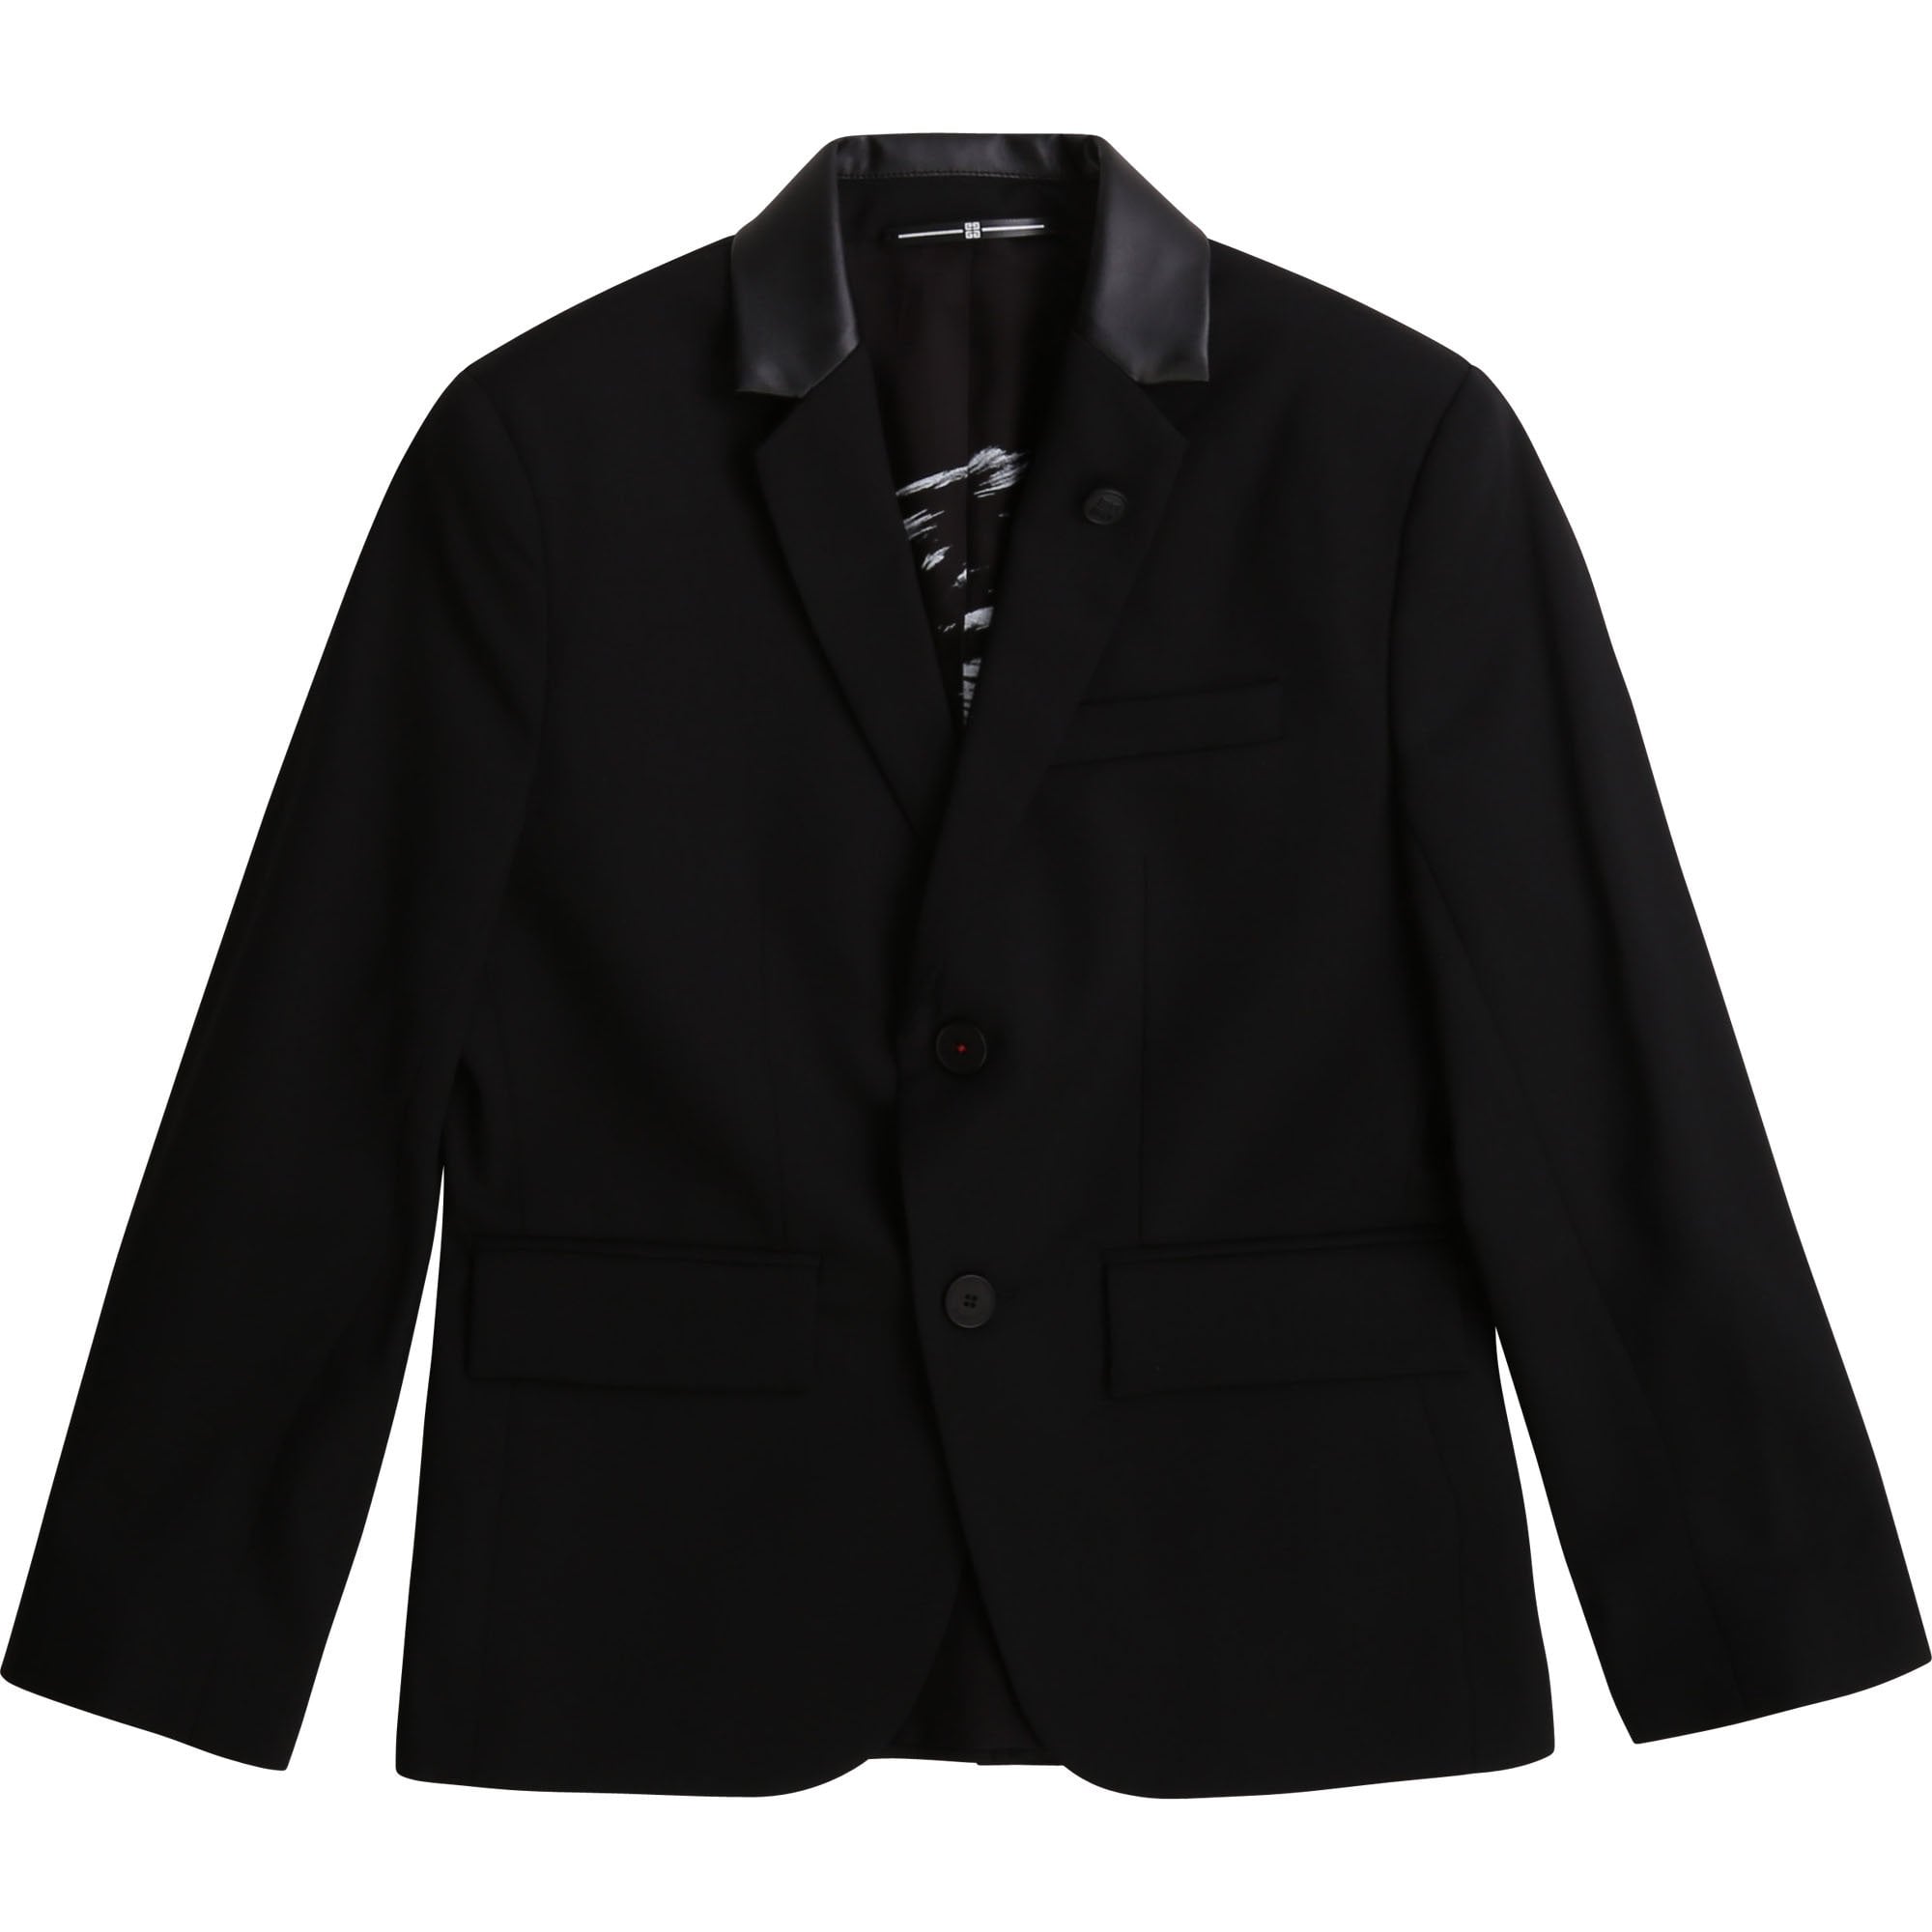 Givenchy Boys Wool Blazer Jacket Black - BLACK 4Y